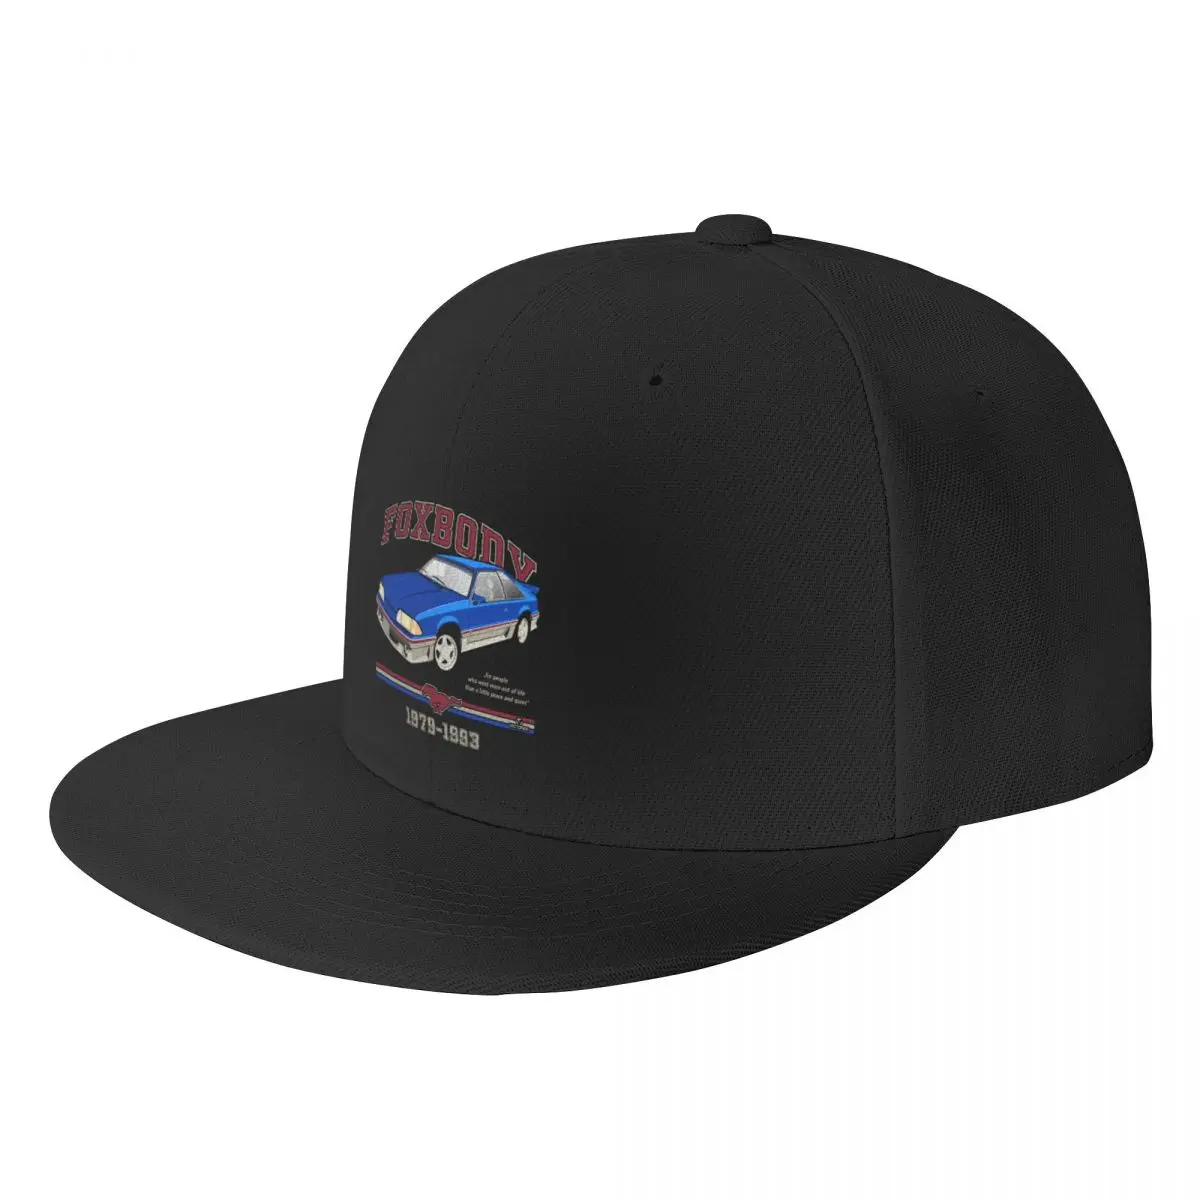 Foxbody - Синяя бейсболка с капюшоном в виде лошадиной шапки, изготовленные на заказ шляпы, уличная одежда, шляпы для мужчин и женщин